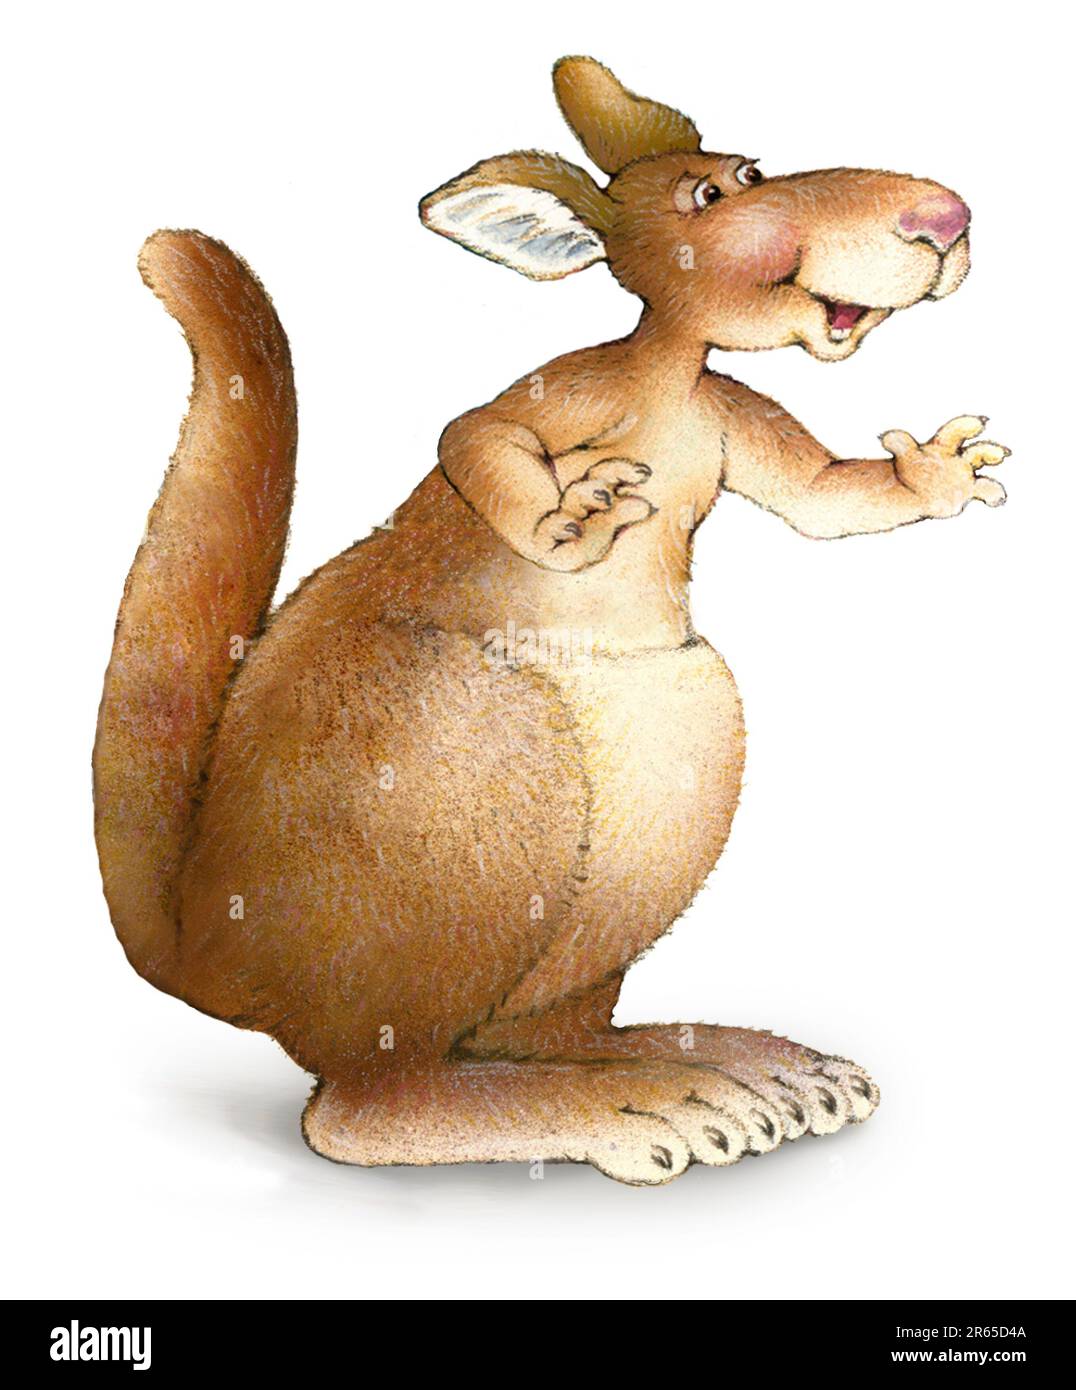 Animals-Kangaroo character Stock Photo